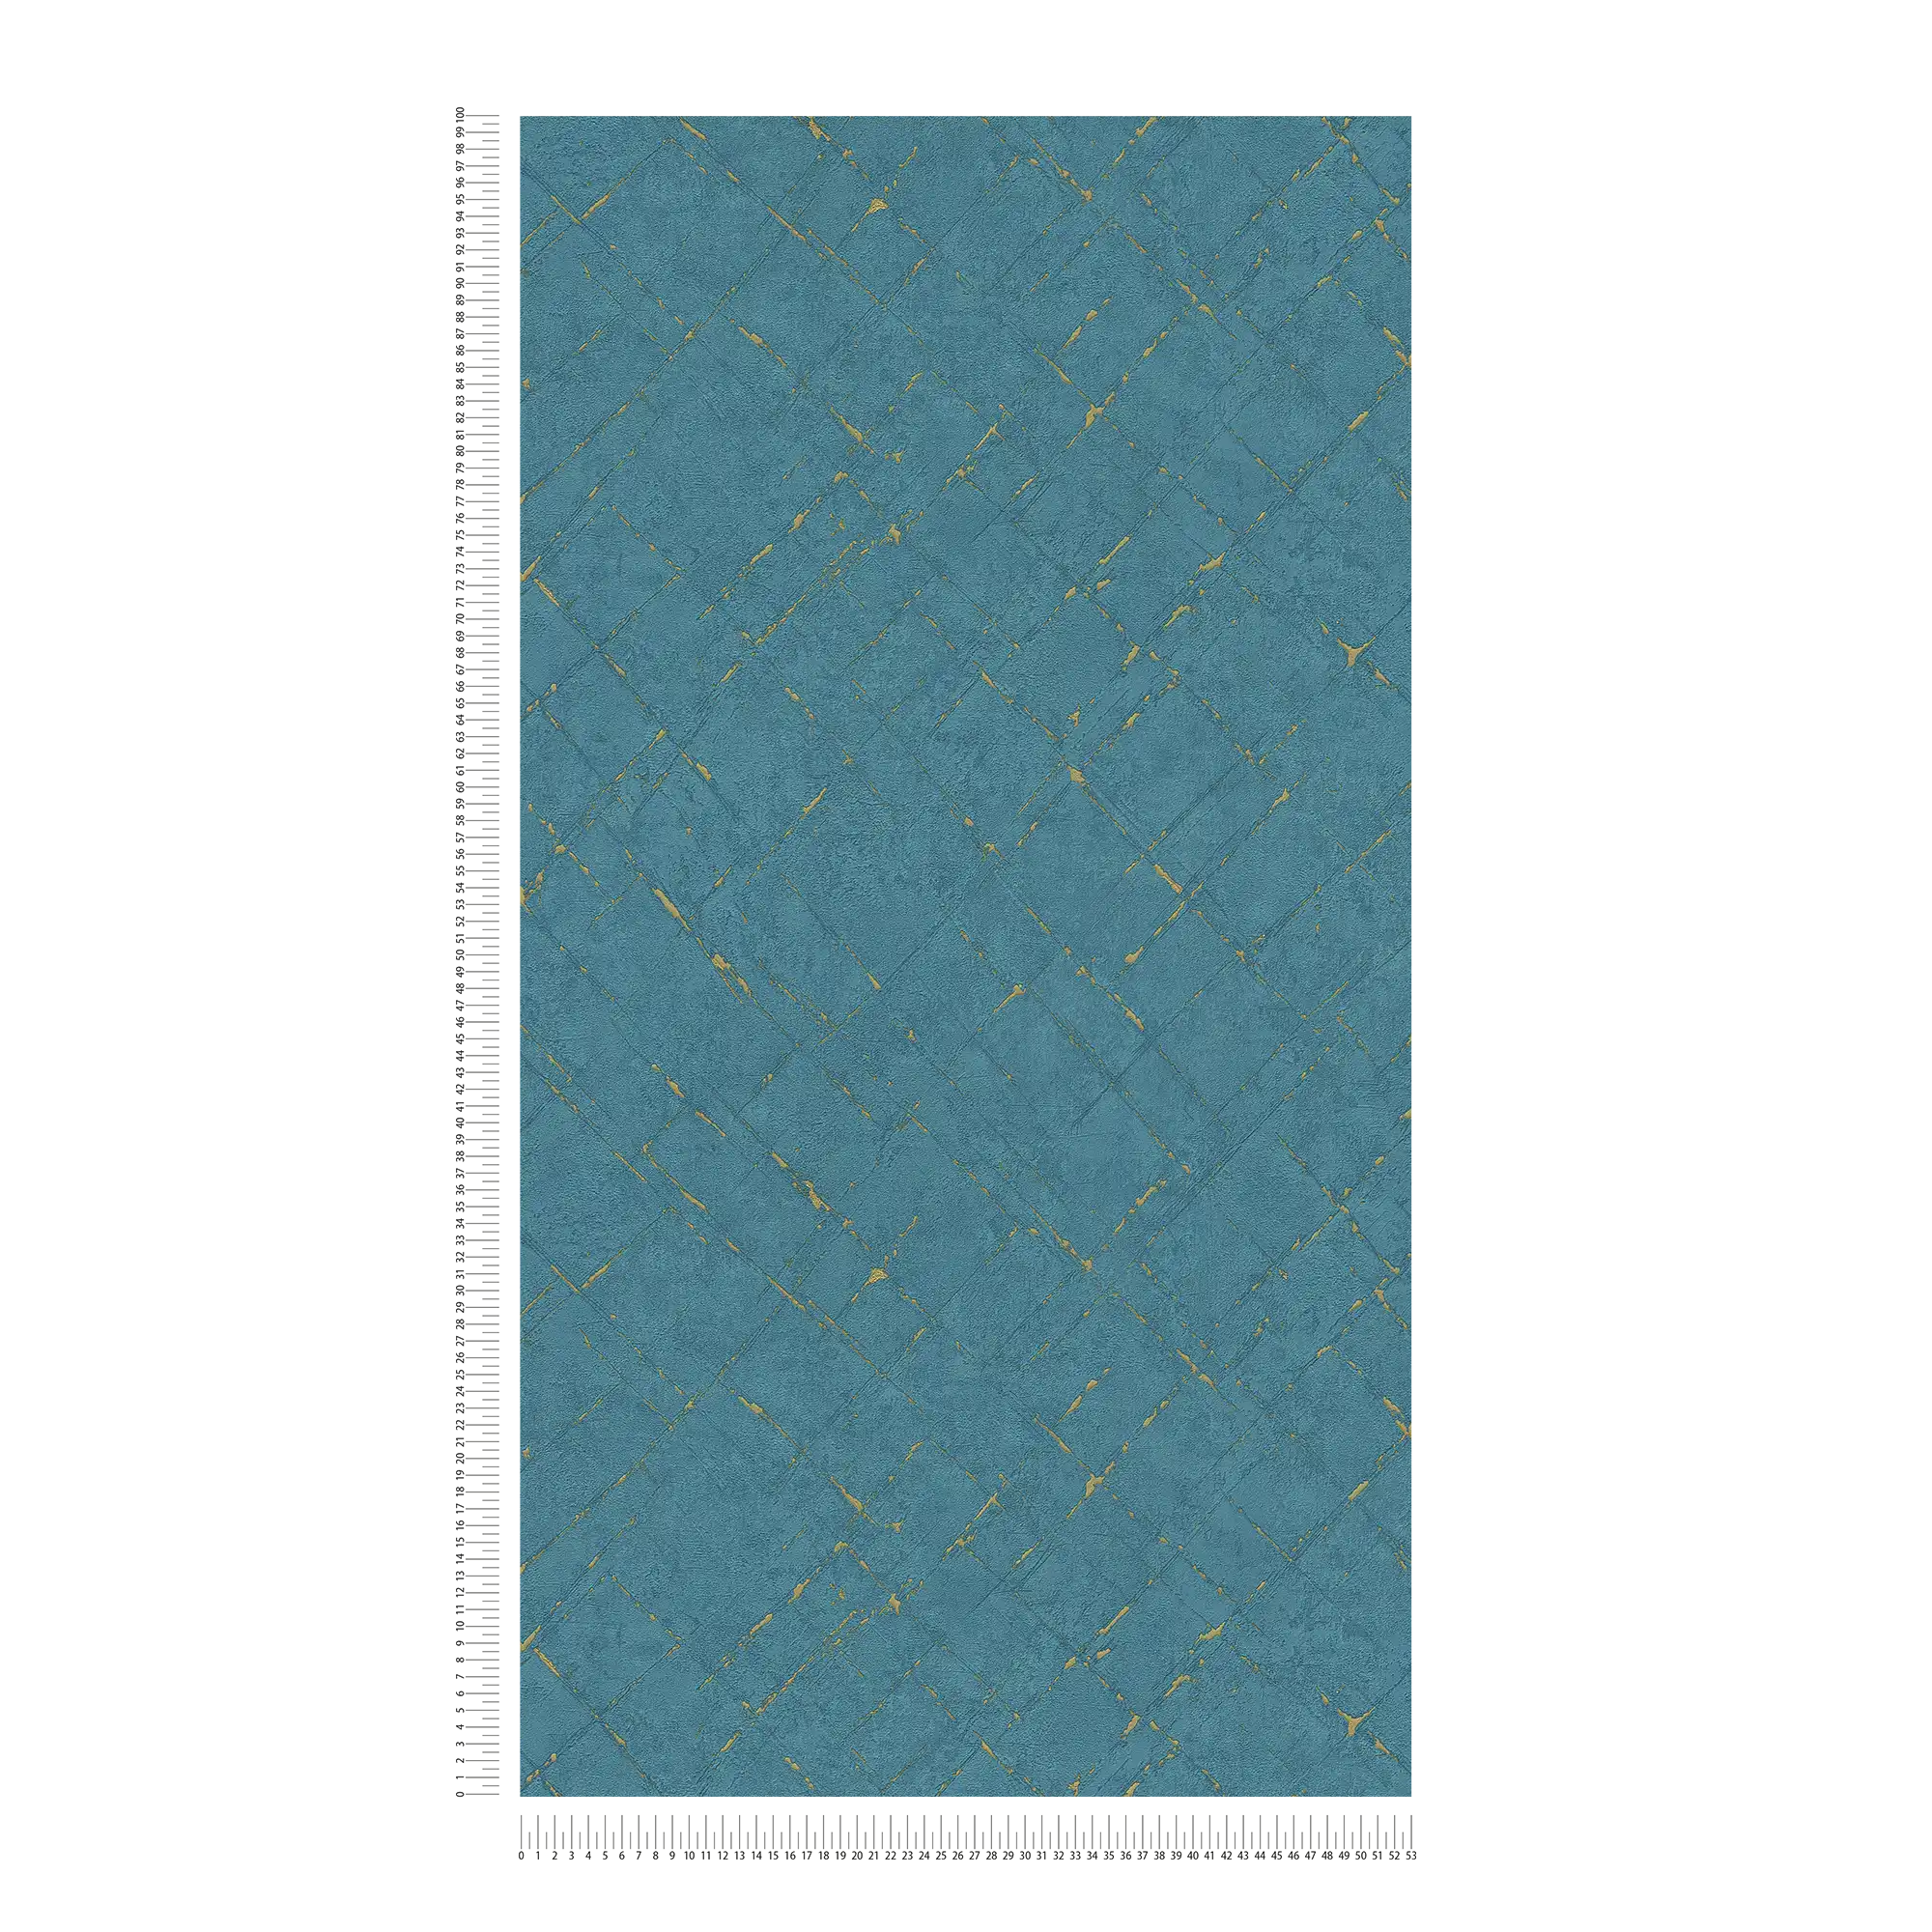             Carta da parati color petrolio effetto intonaco e metallizzato - blu, oro
        